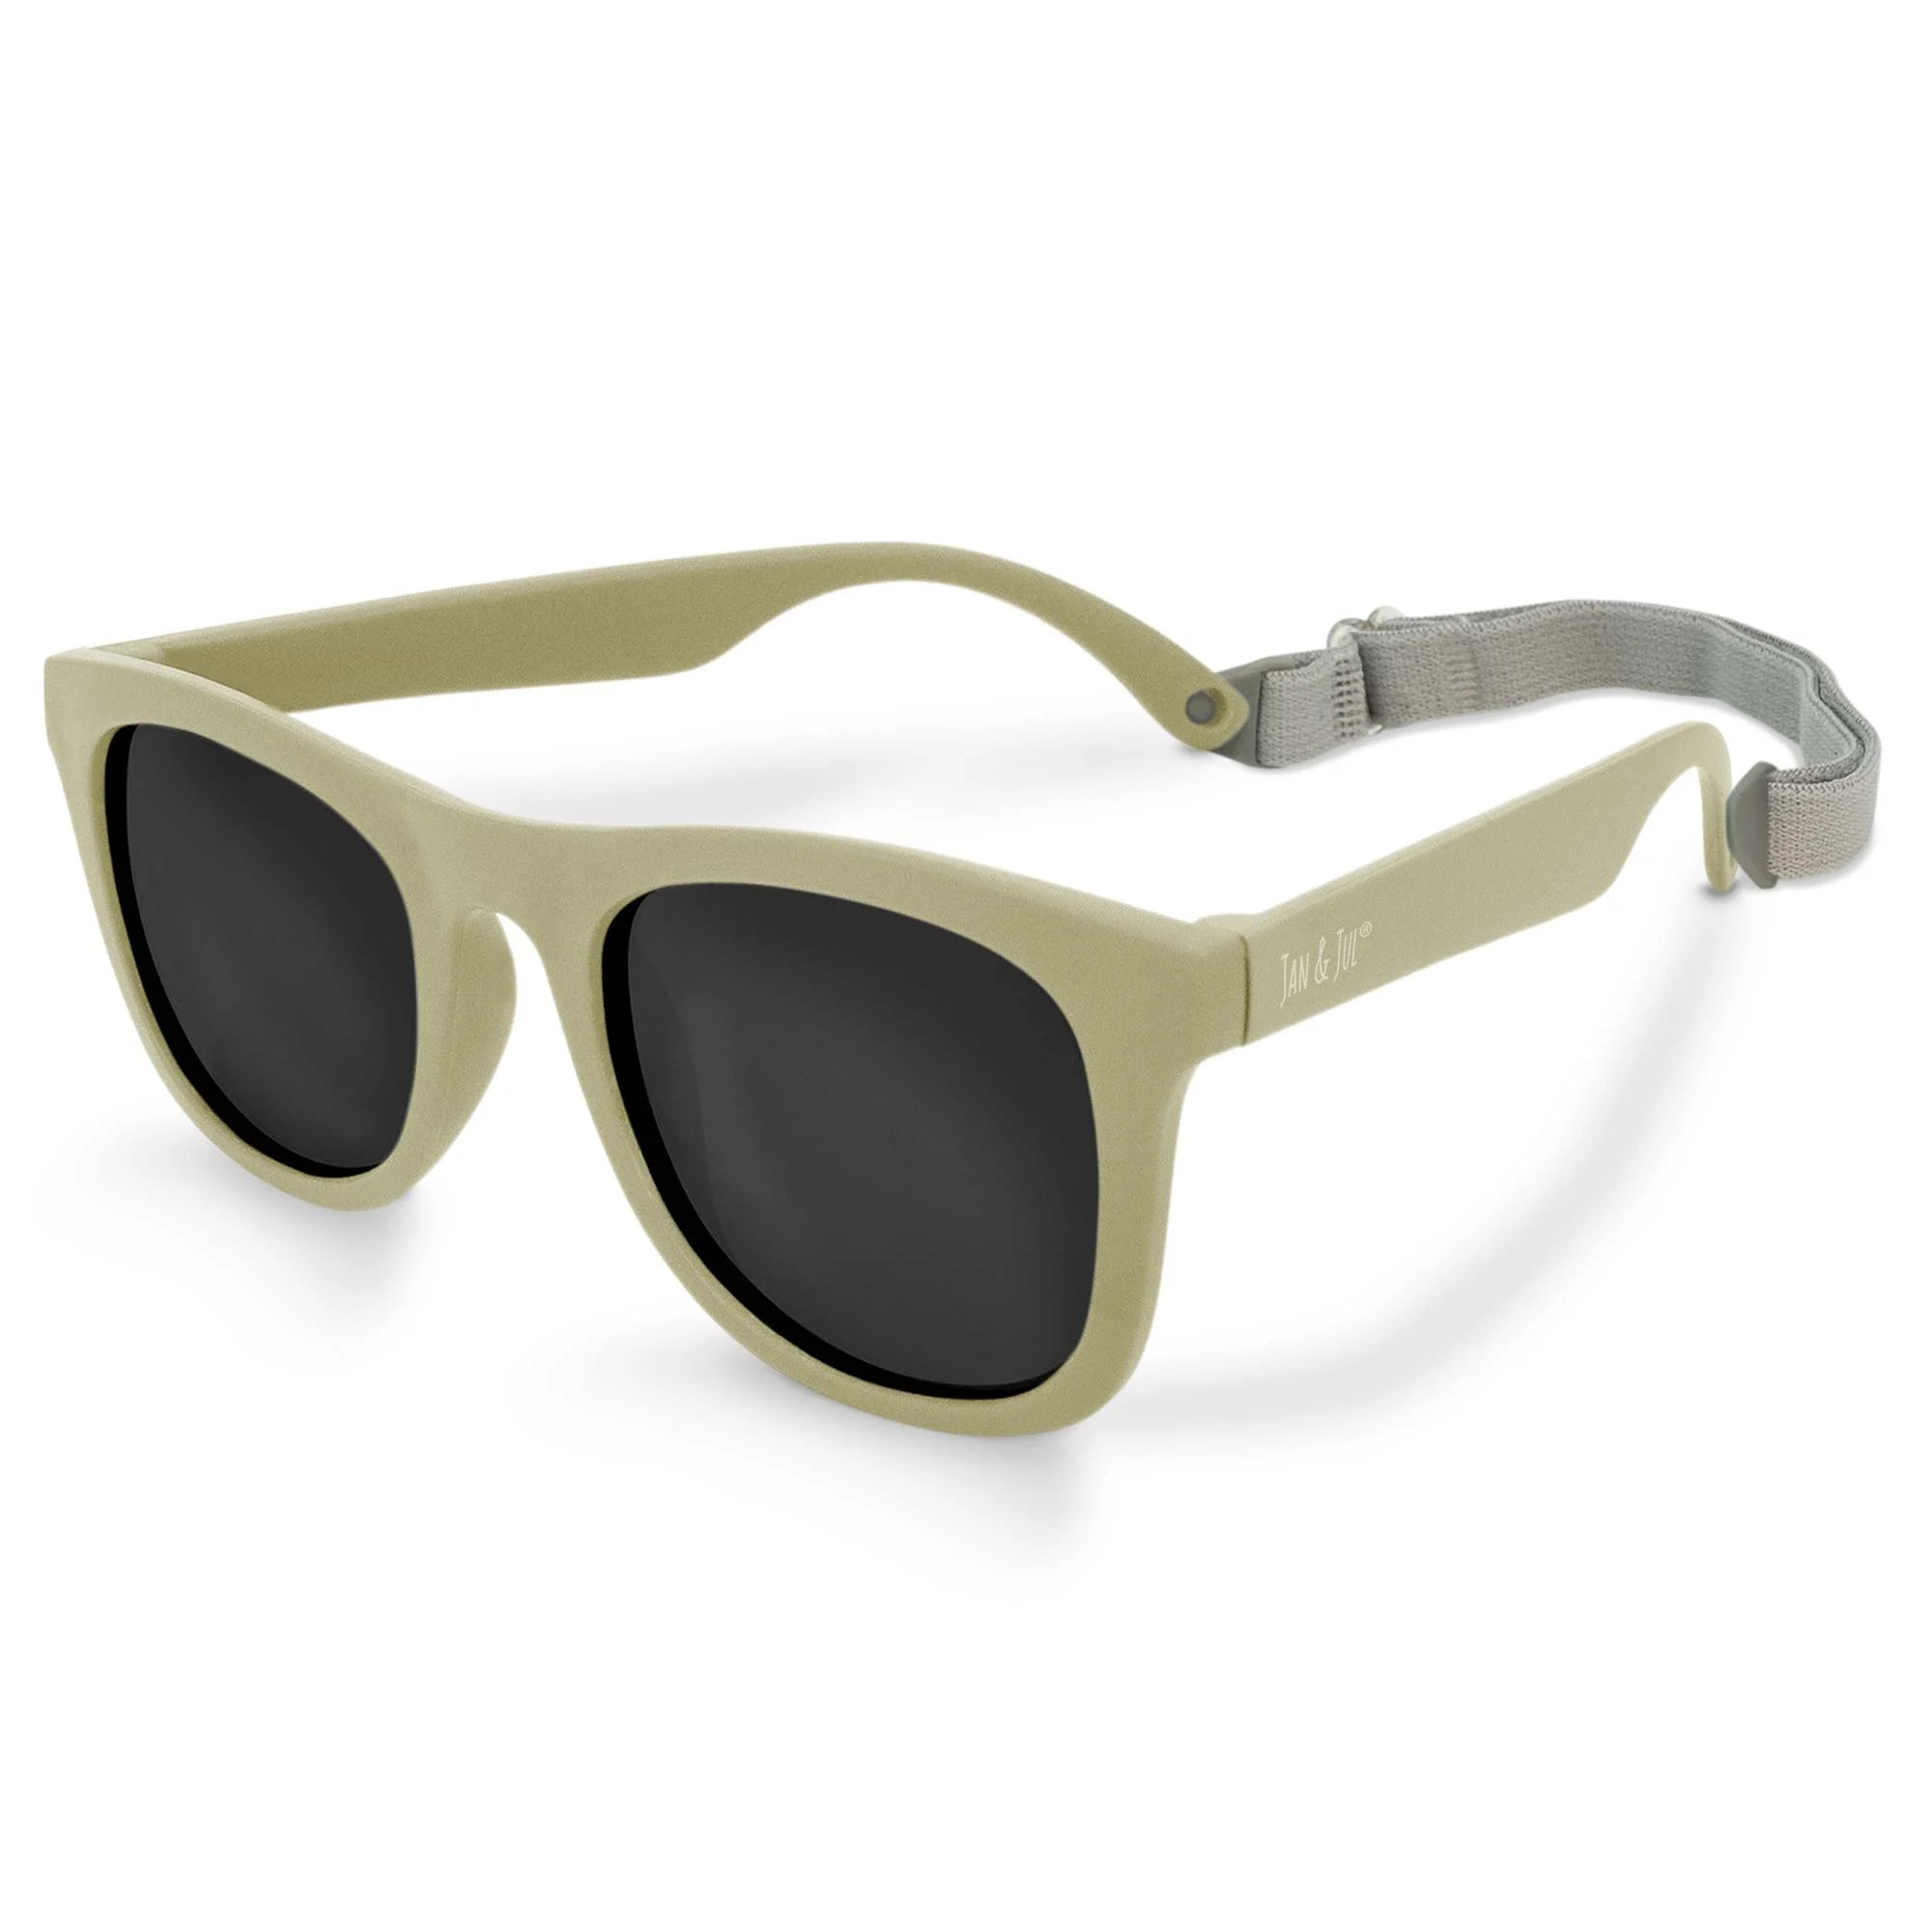 Jan & Jul Urban Xplorer Sunglasses - Olive Khaki